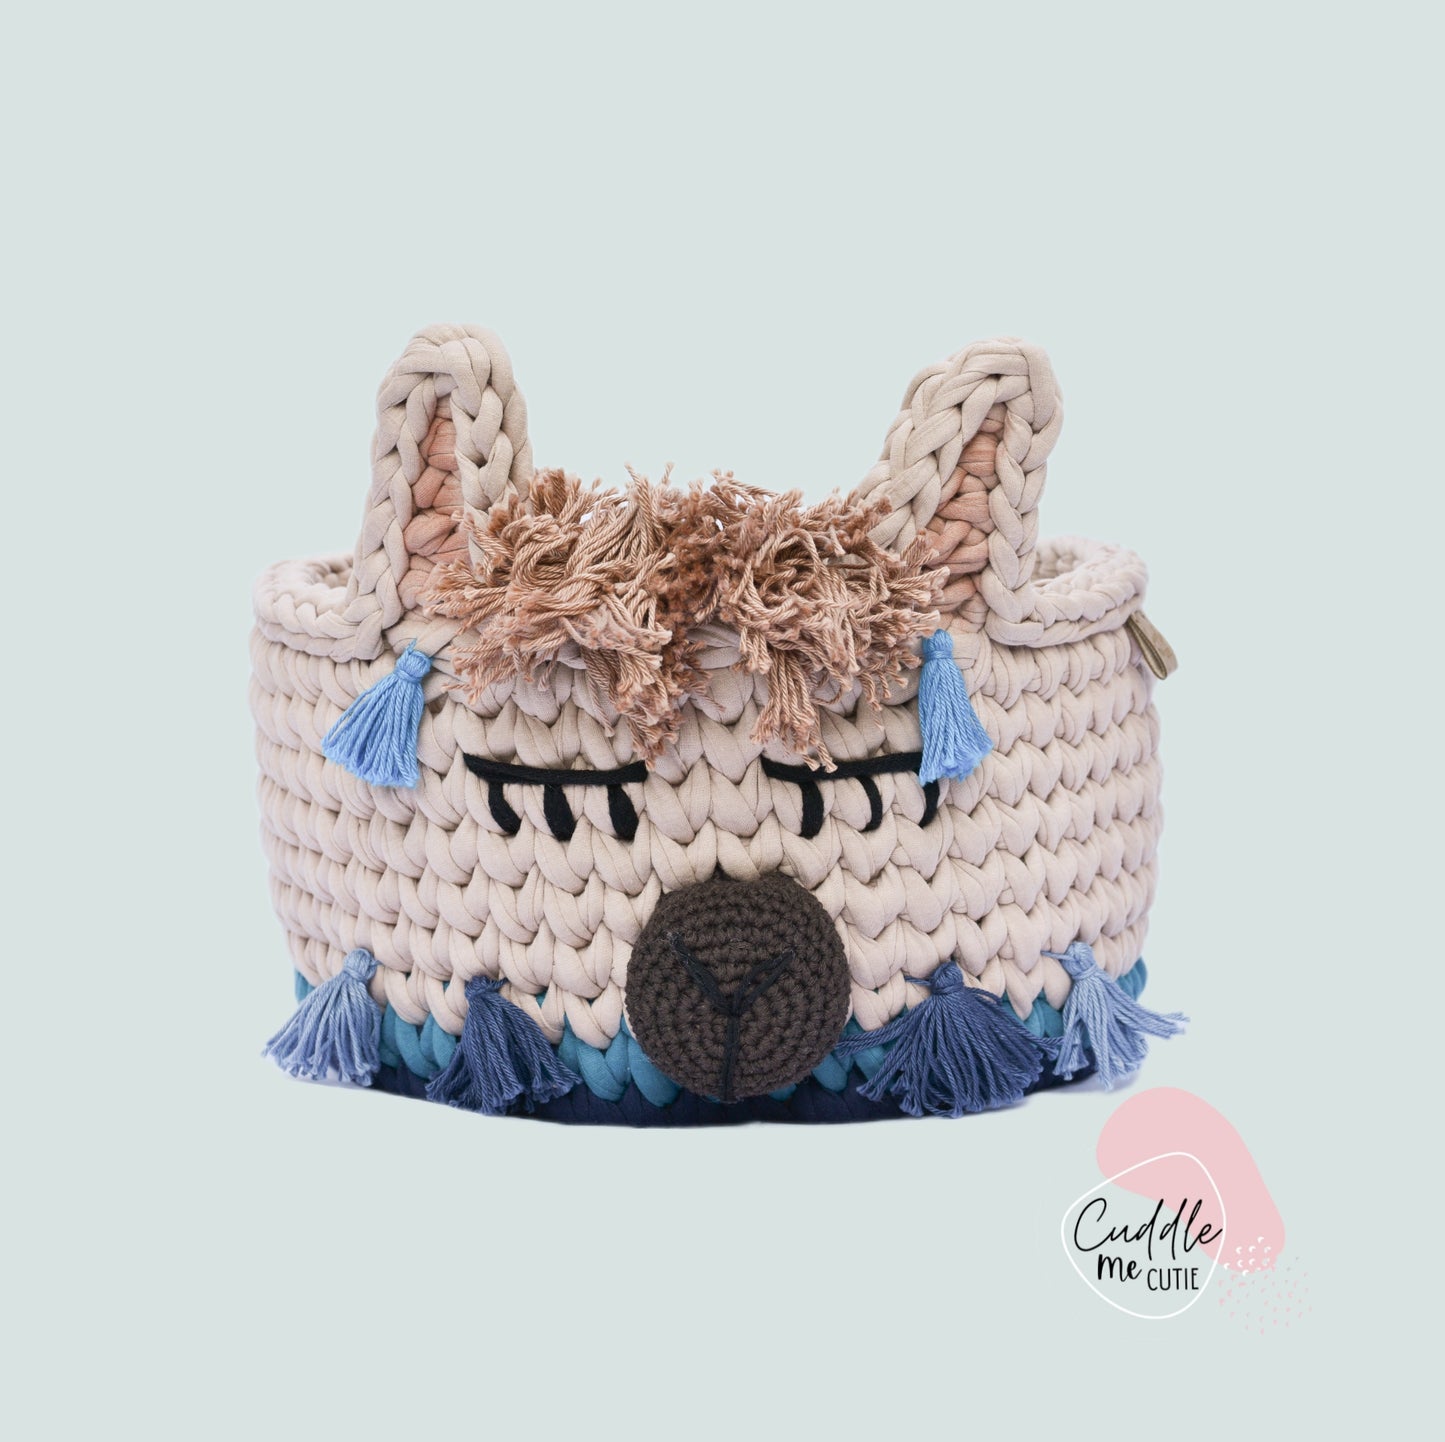 Crochet Boy Llama Basket